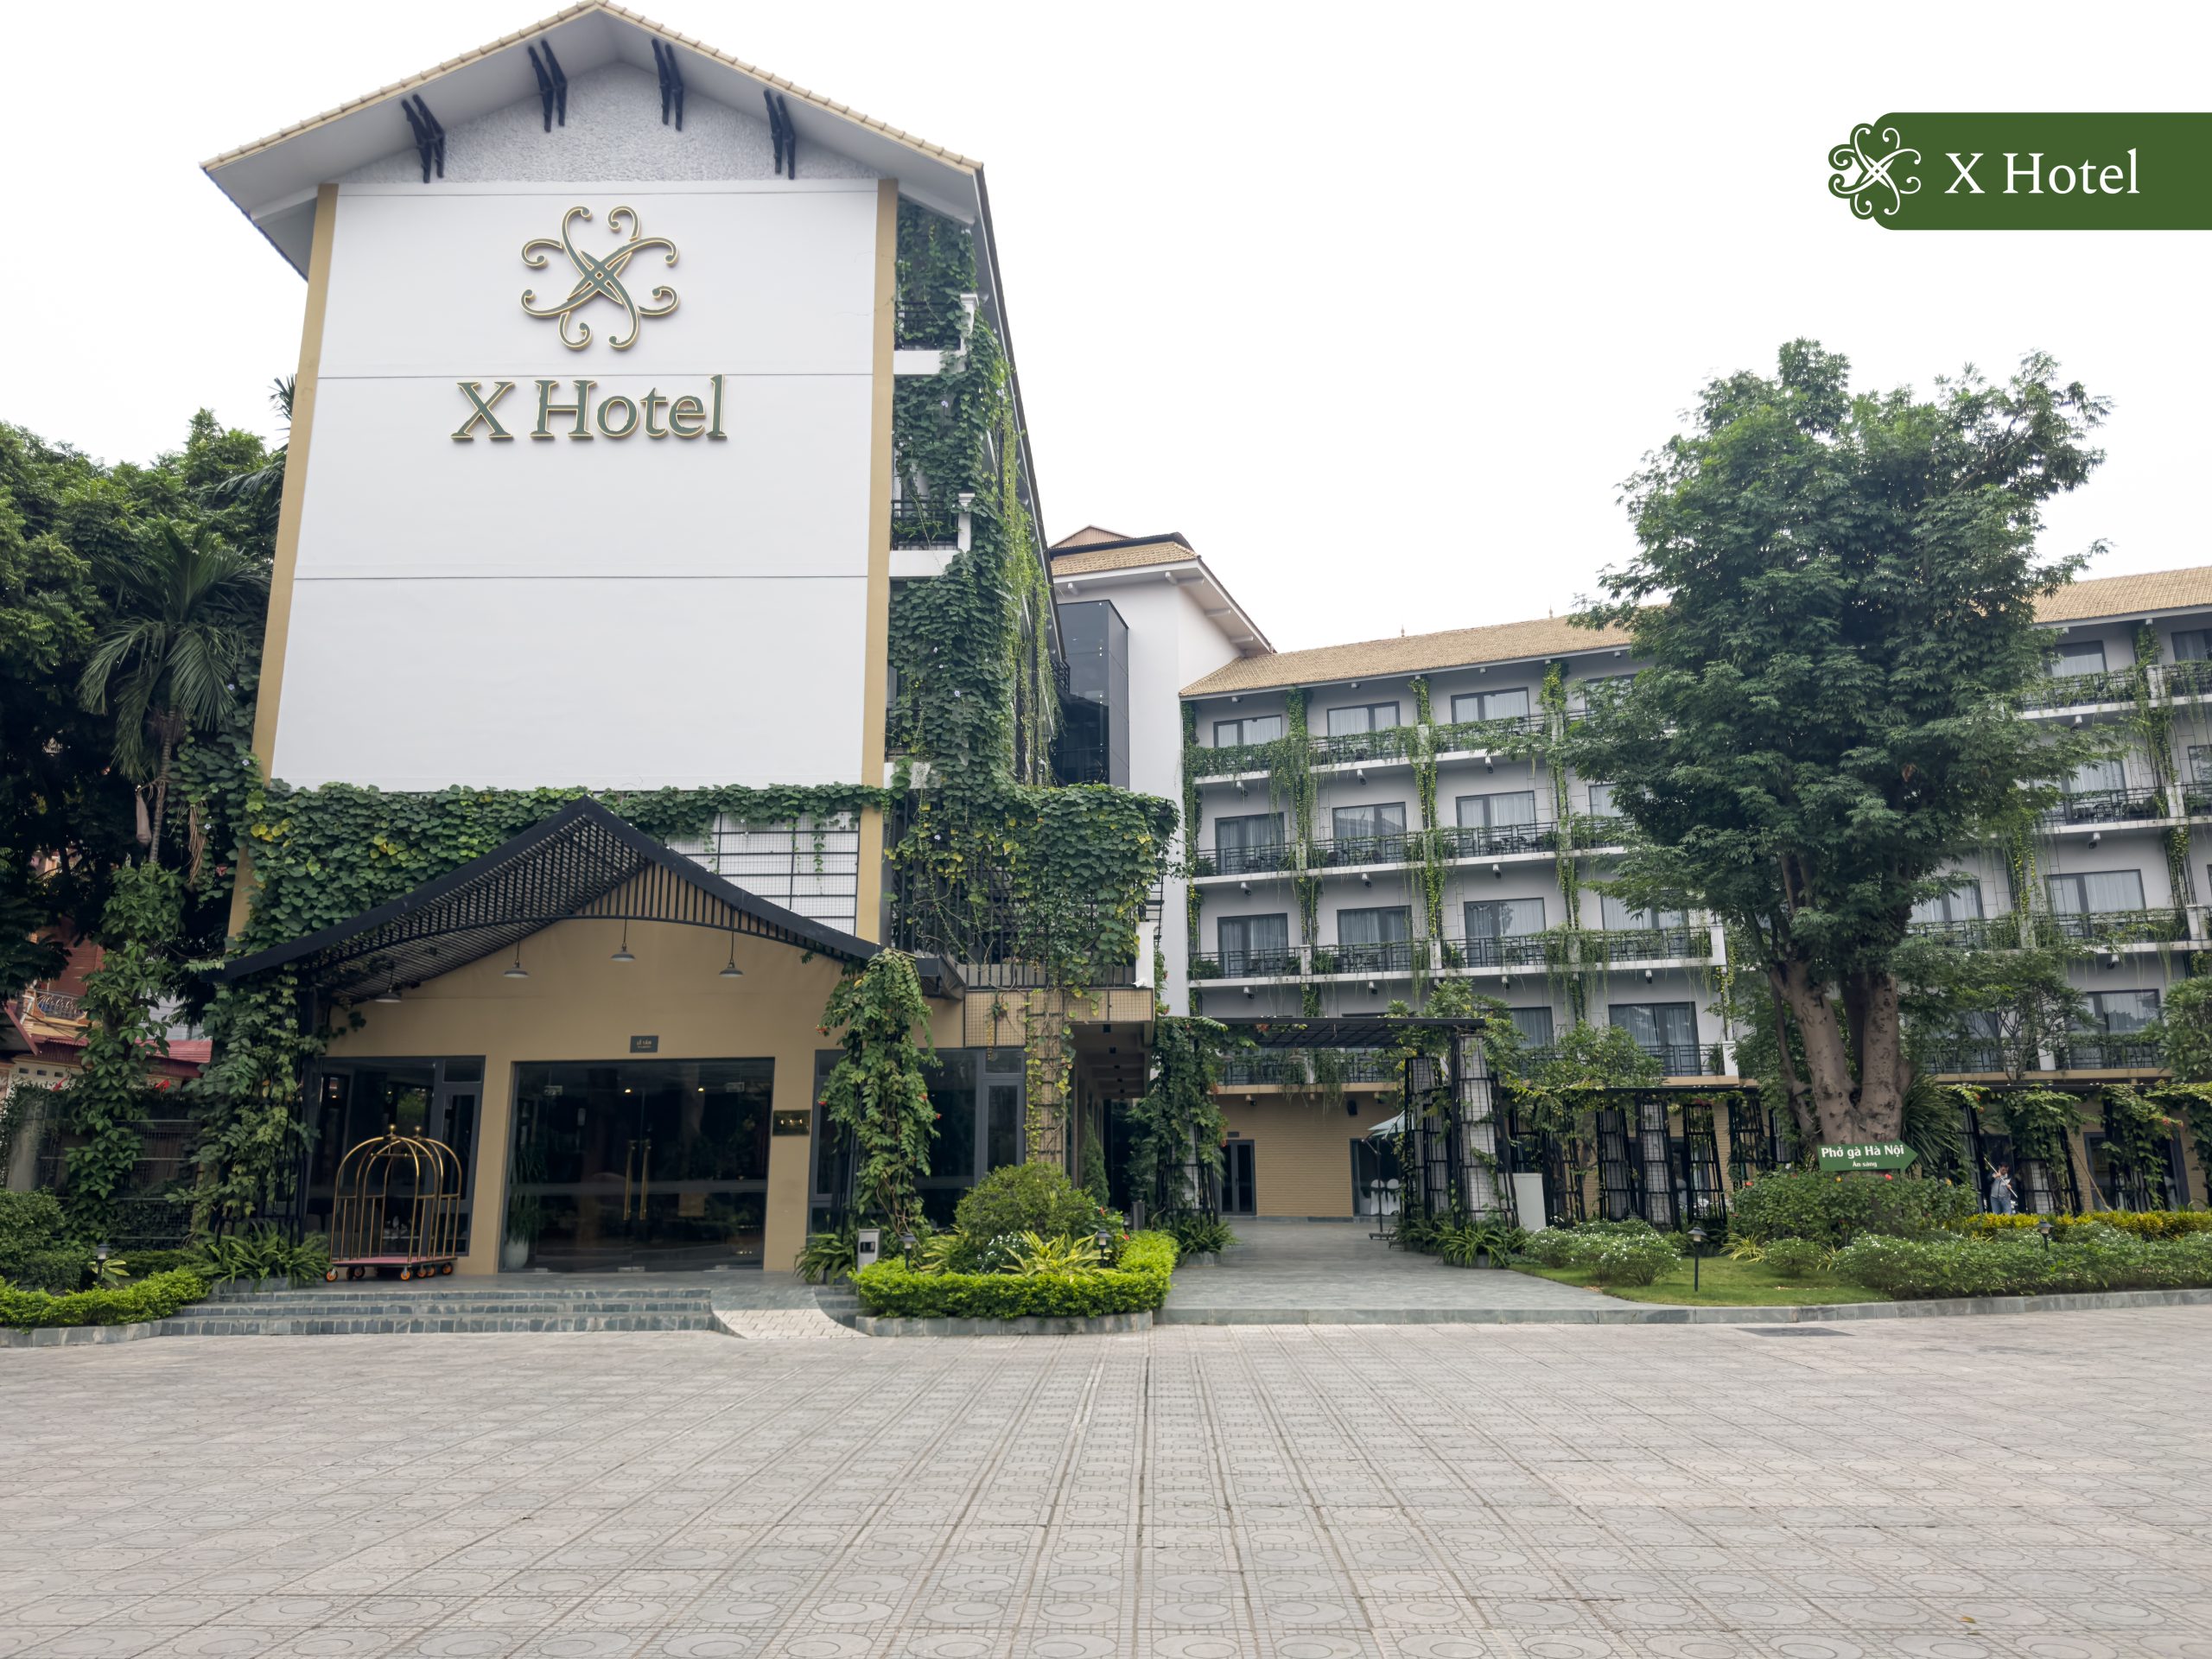 Đặt phòng khách sạn Thái Nguyên X Hotel giúp bạn có một kỳ nghỉ đáng nhớ tại đây